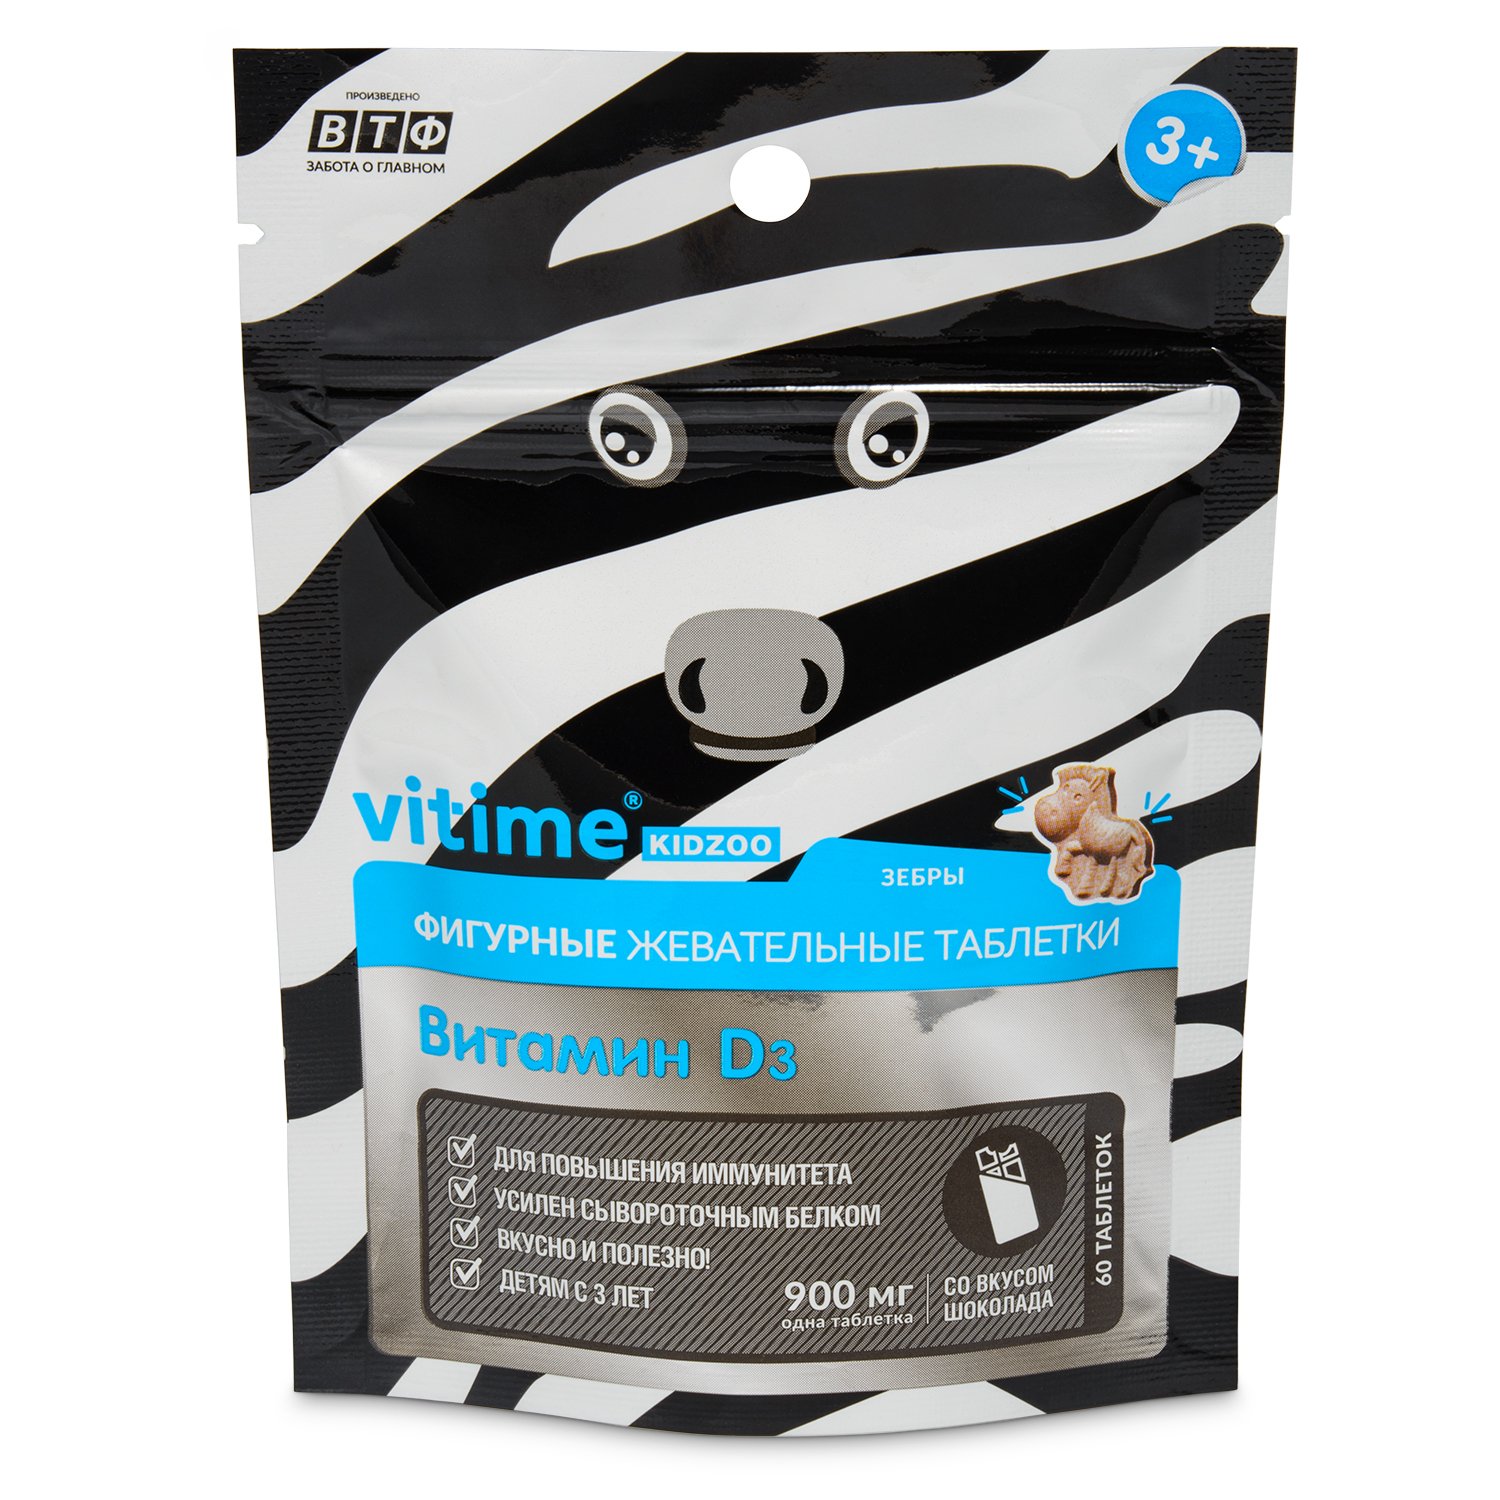 Биологически активная добавка Vitime Kidzoo Витамин D3 фигурные шоколад 60таблеток - фото 1